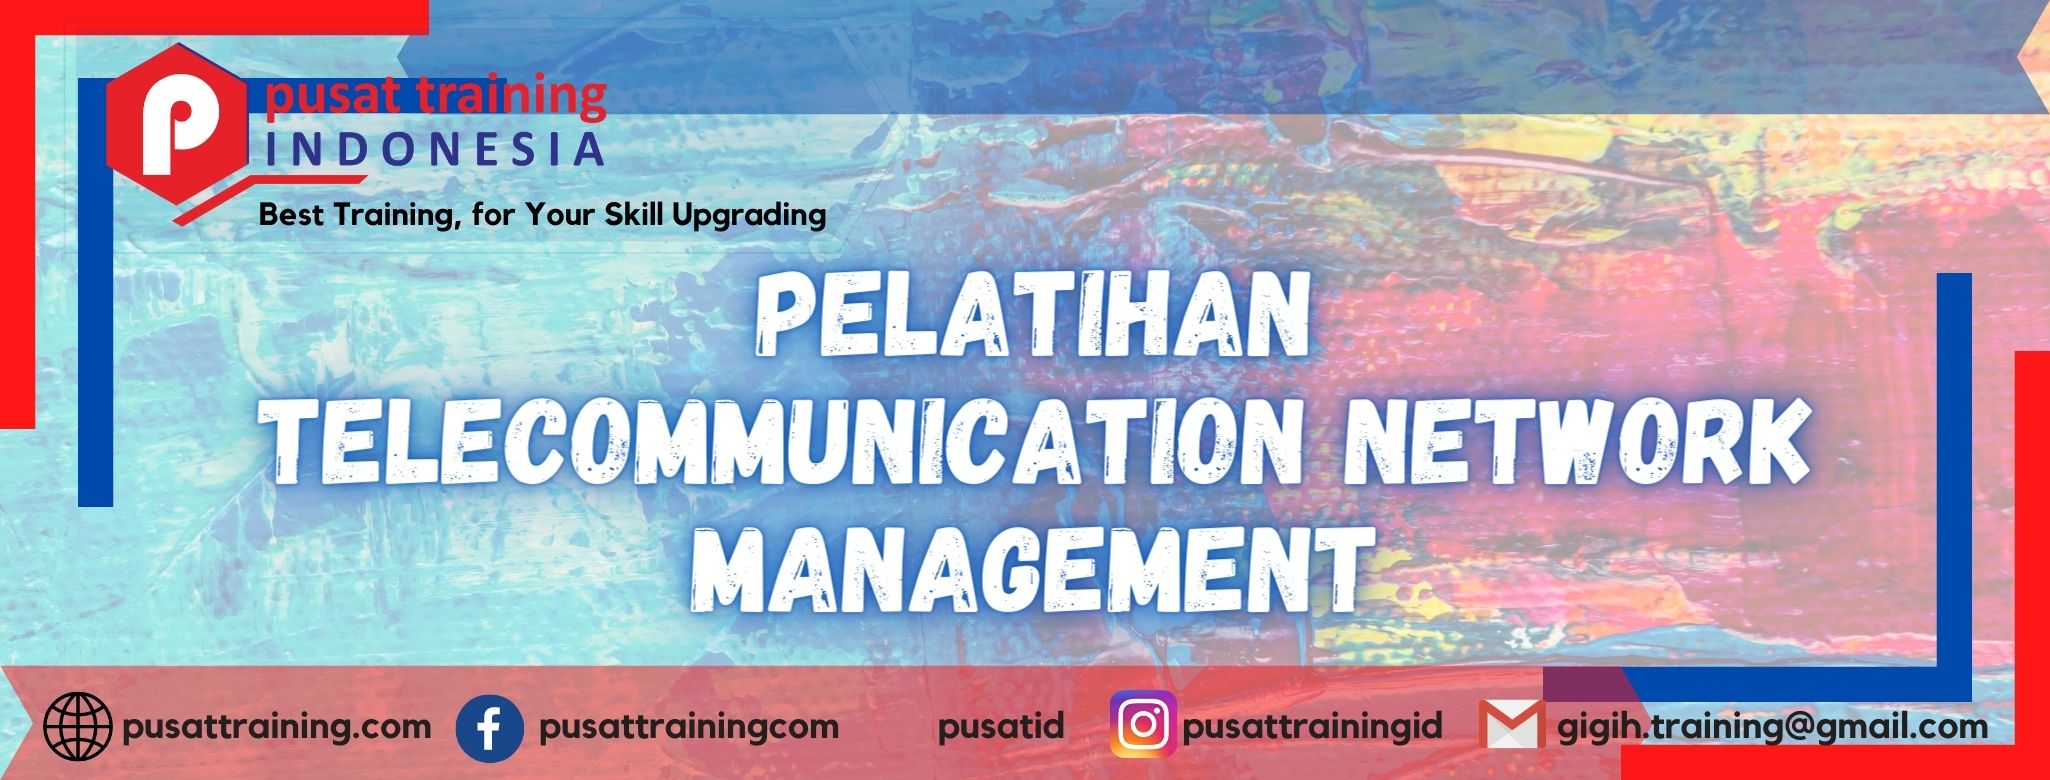 pelatihan-telecommunication-network-management